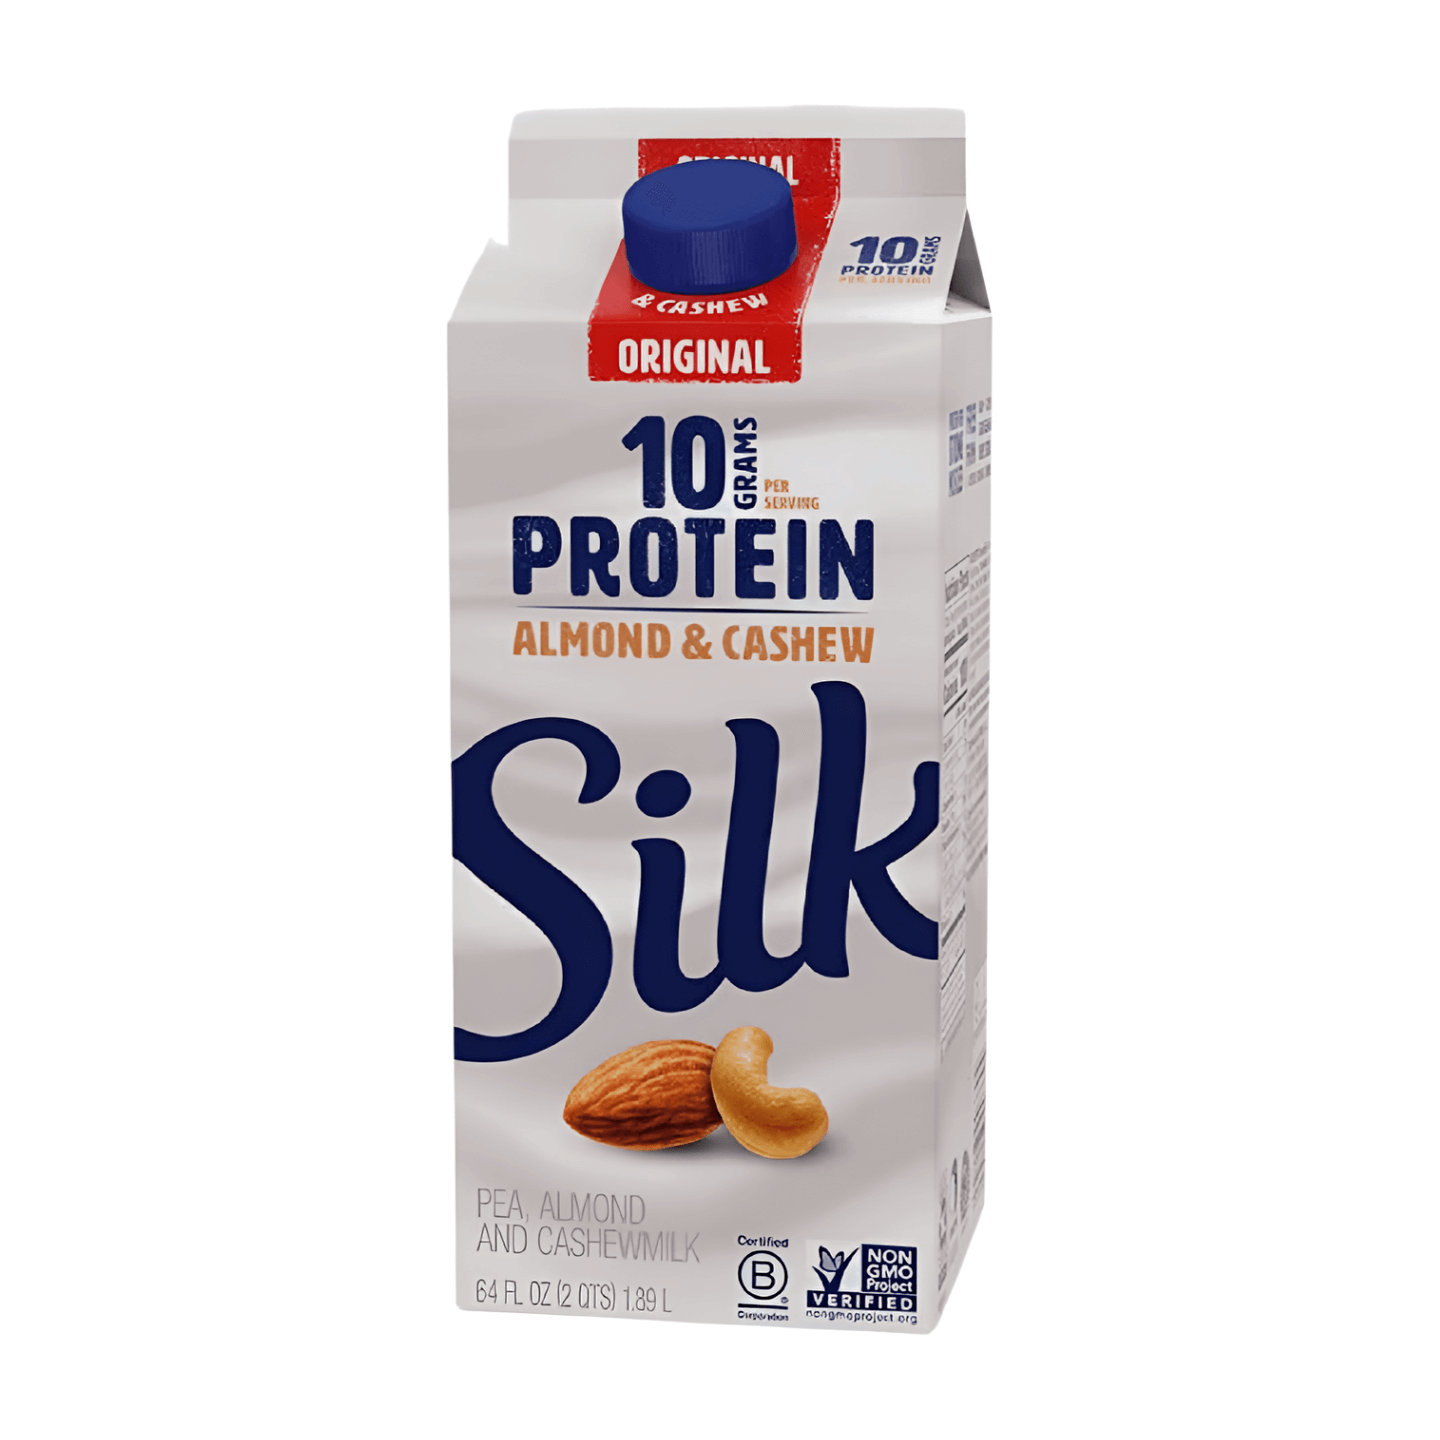 Original Silk Protein